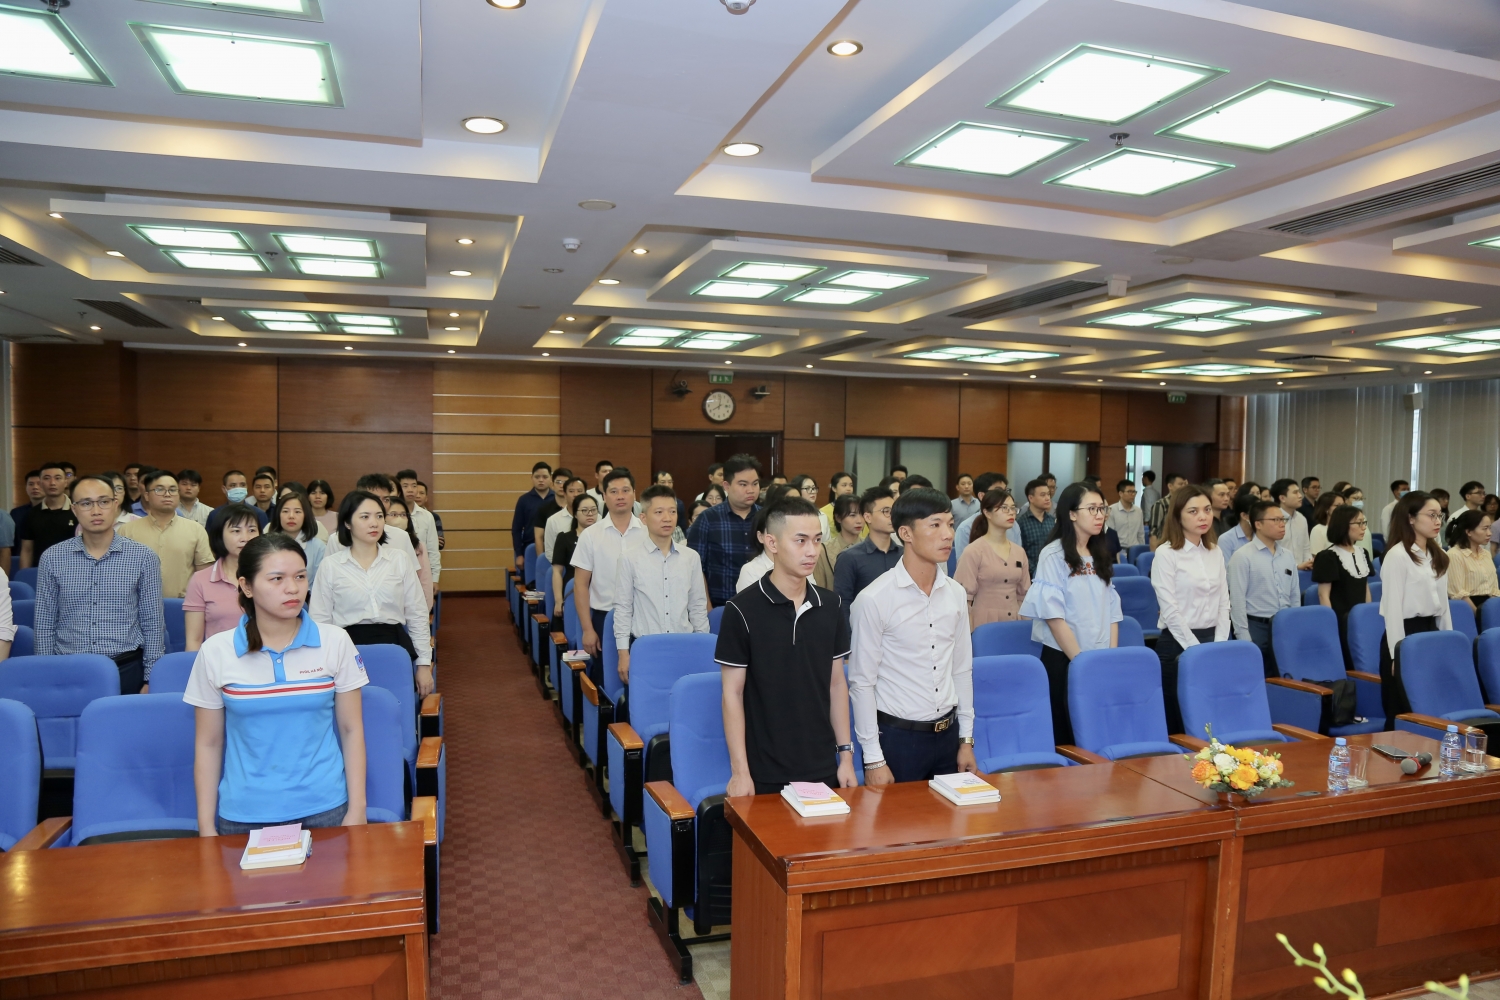 Khai giảng lớp bồi dưỡng nhận thức về Đảng năm 2023 khu vực Hà Nội